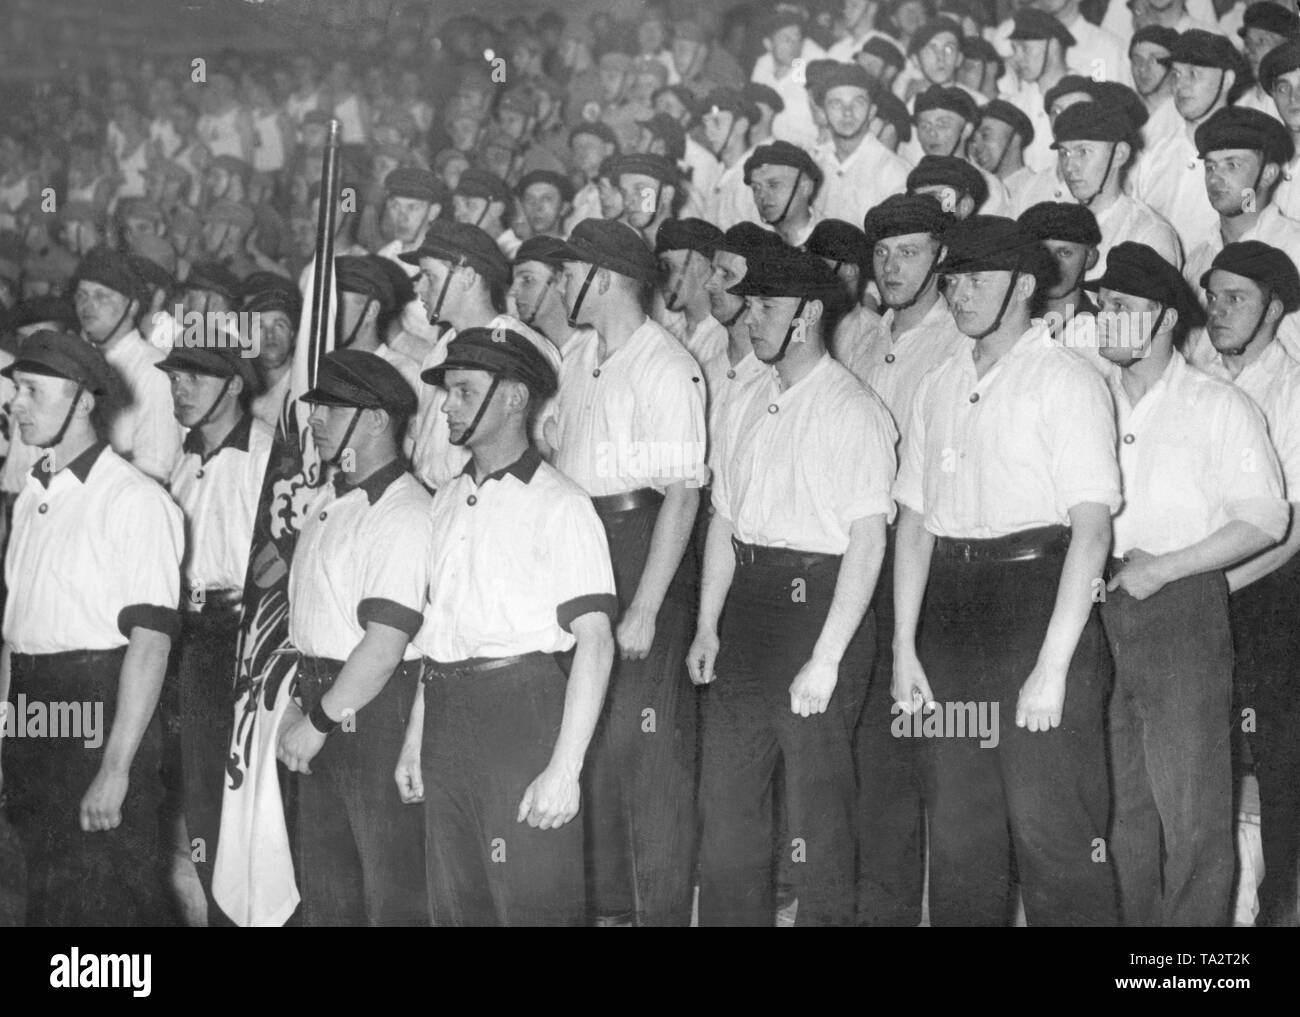 Mitglieder einer SA-Sturm haben sich während einer Messe Veranstaltung der NSDAP. Sie tragen einheitlich weiße T-Shirts und Kappen. Stockfoto